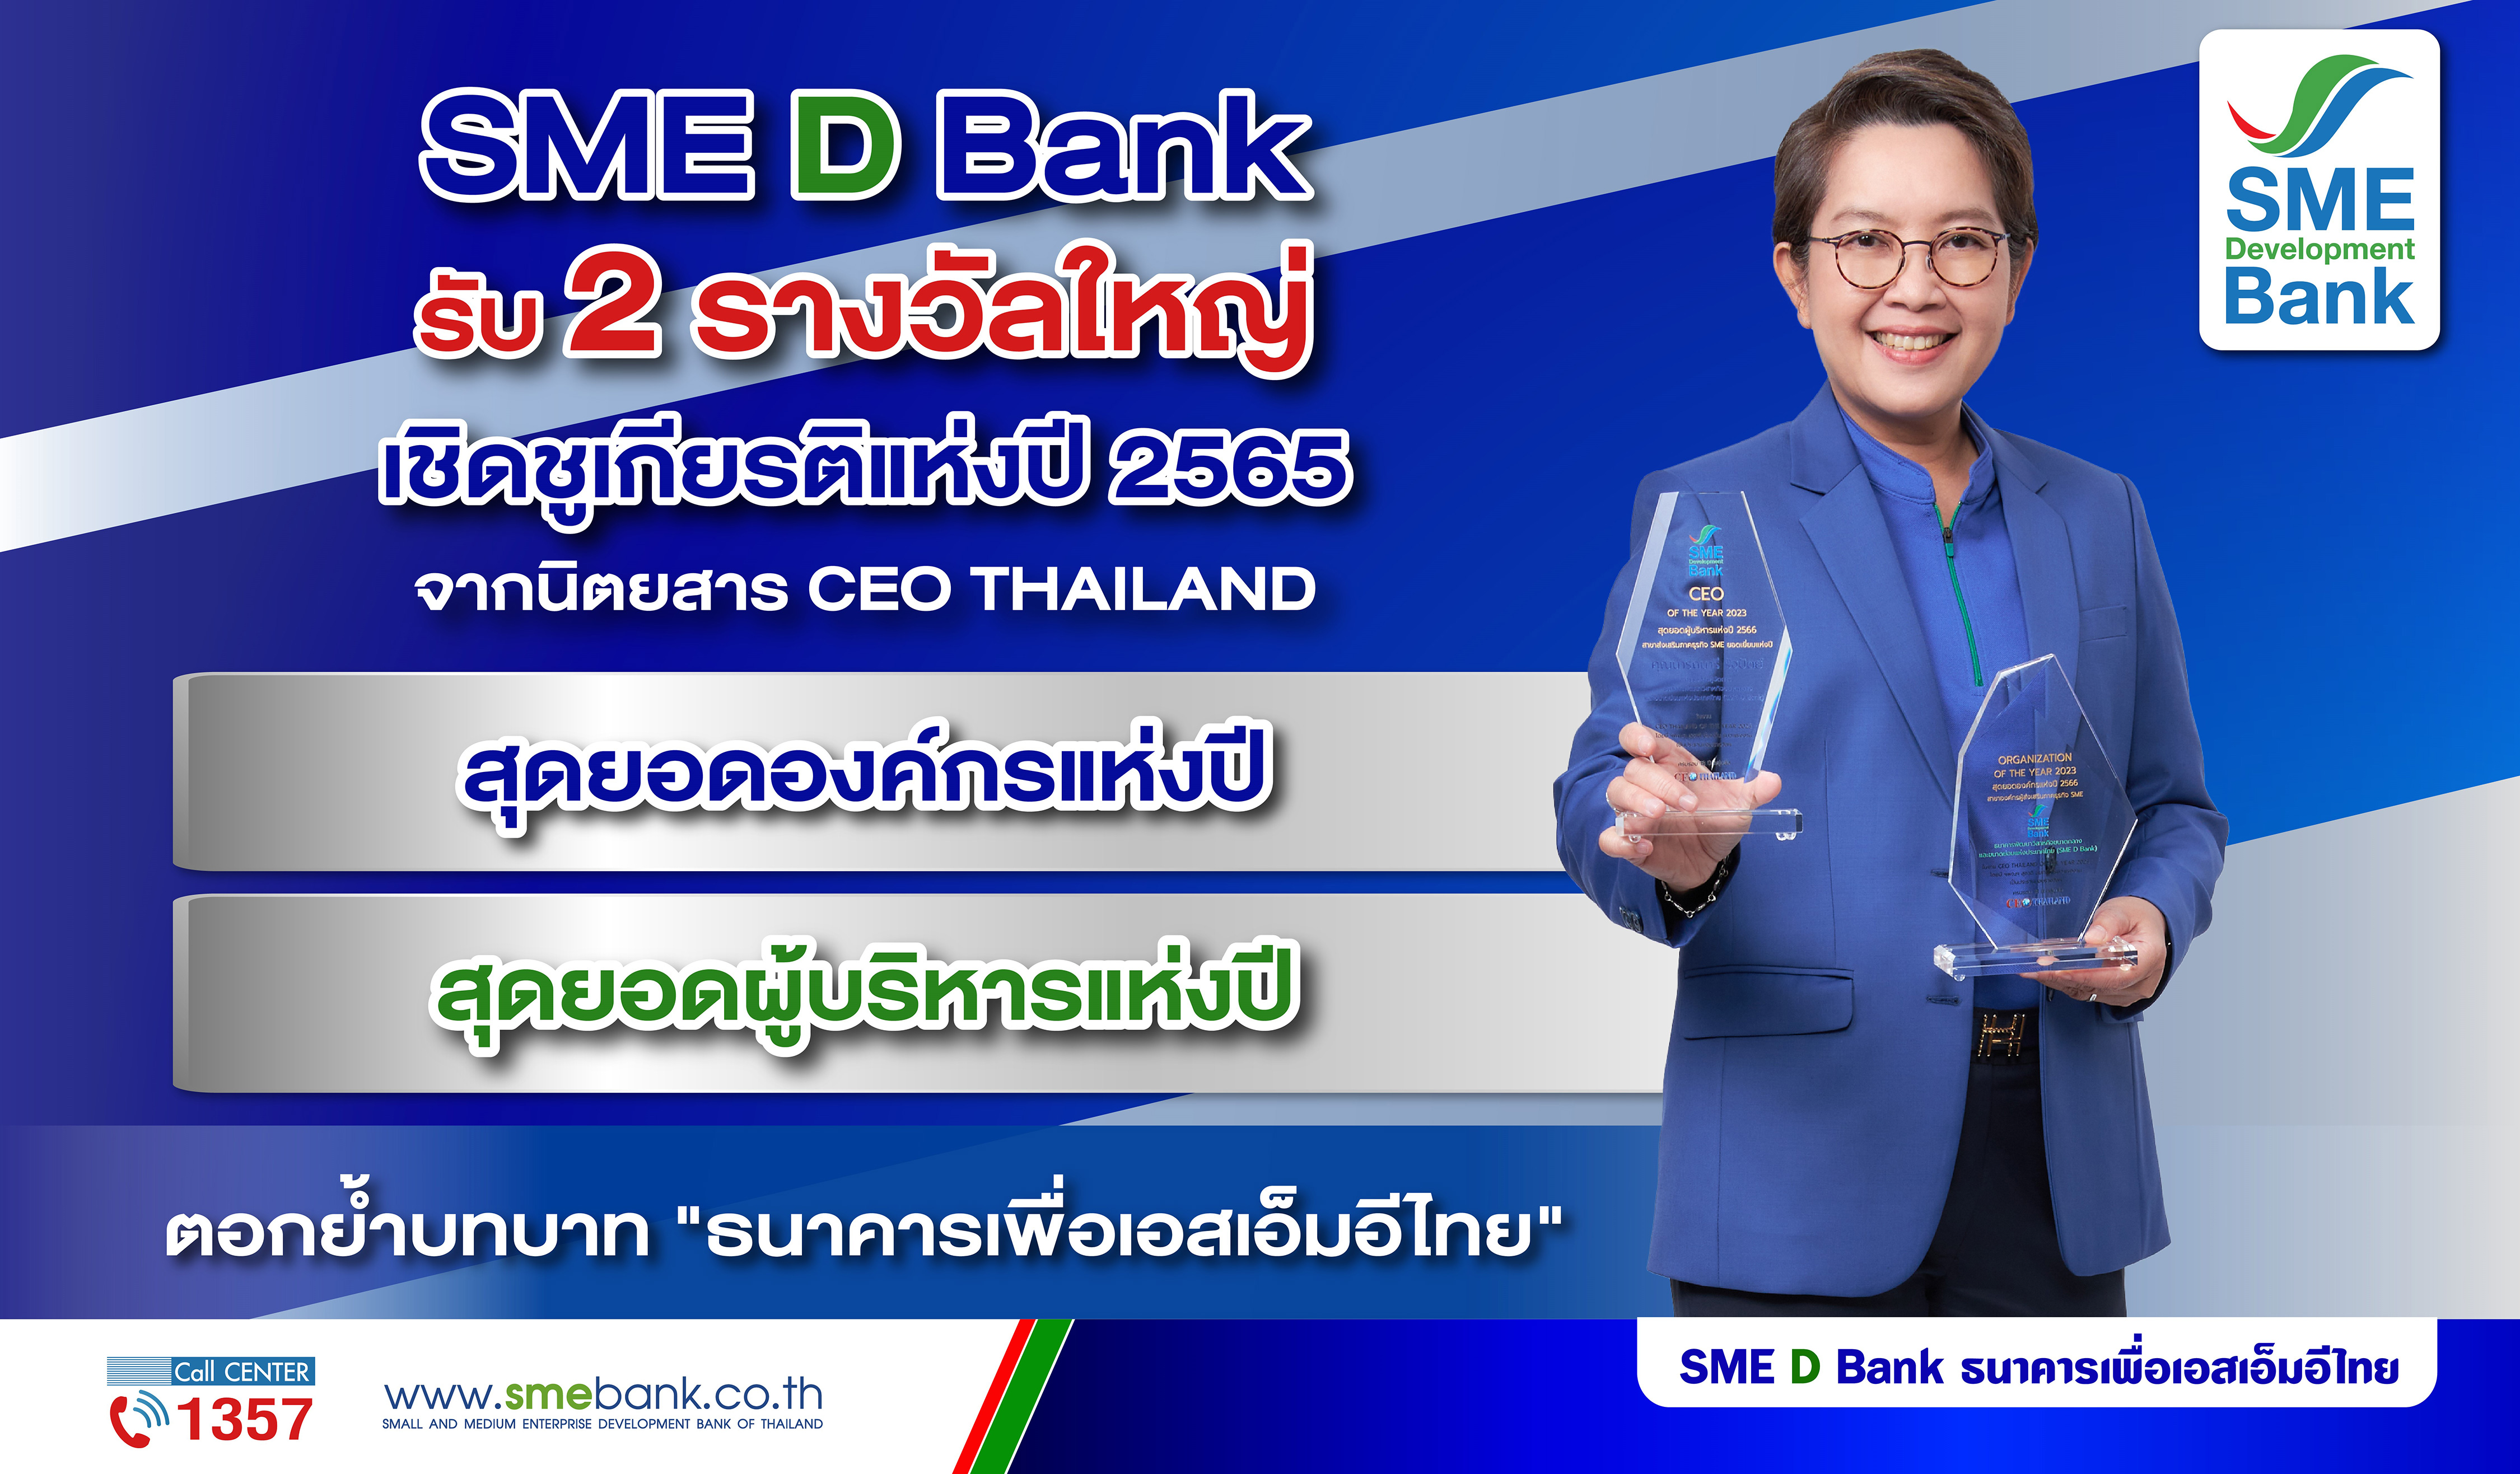 SME D Bank รับ 2 รางวัลใหญ่เชิดชูเกียรติแห่งปี 2565 ‘สุดยอดองค์กรและผู้บริหาร’ ตอกย้ำบทบาท ‘ธนาคารเพื่อเอสเอ็มอีไทย’